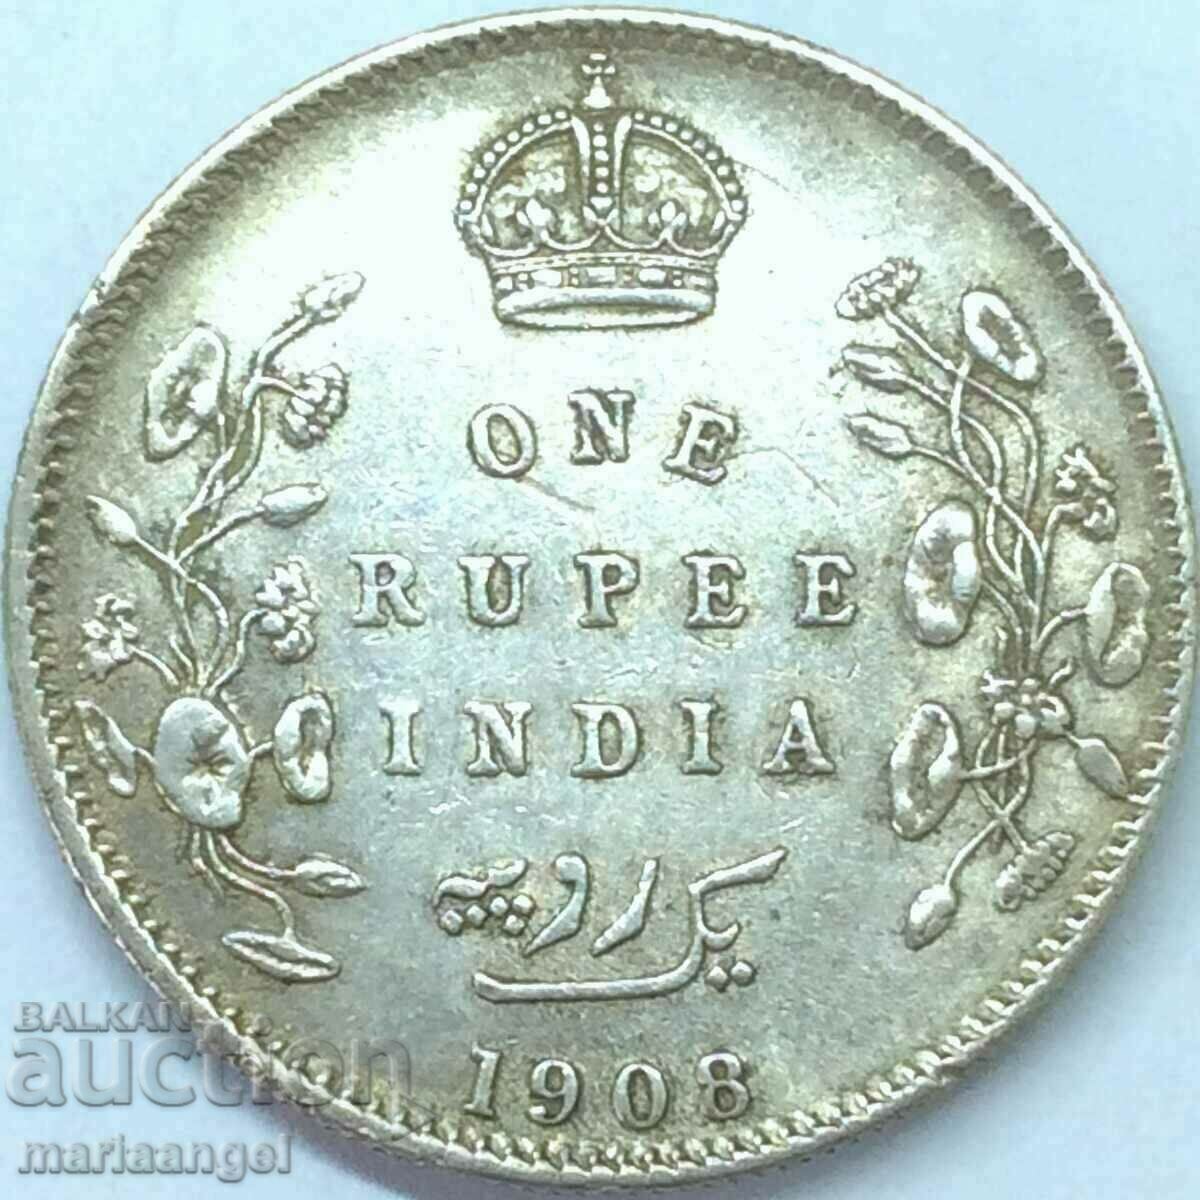 Βρετανική Ινδία 1 ρουπία 1908 30 χιλιοστά 11,60 g - αρκετά σπάνιο